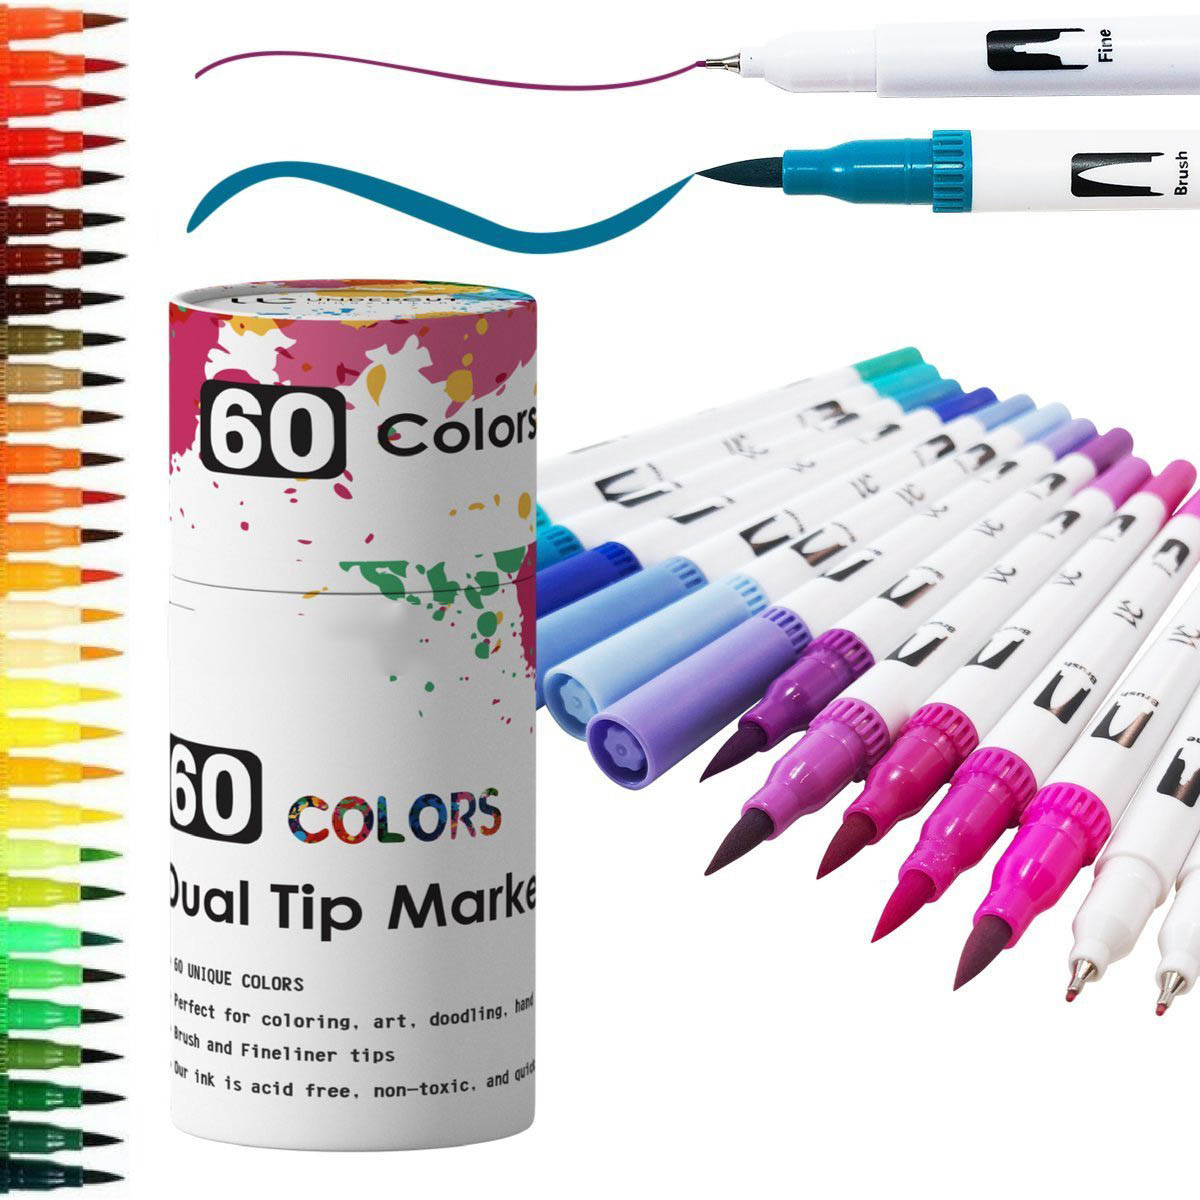 60 colors tube brush marker